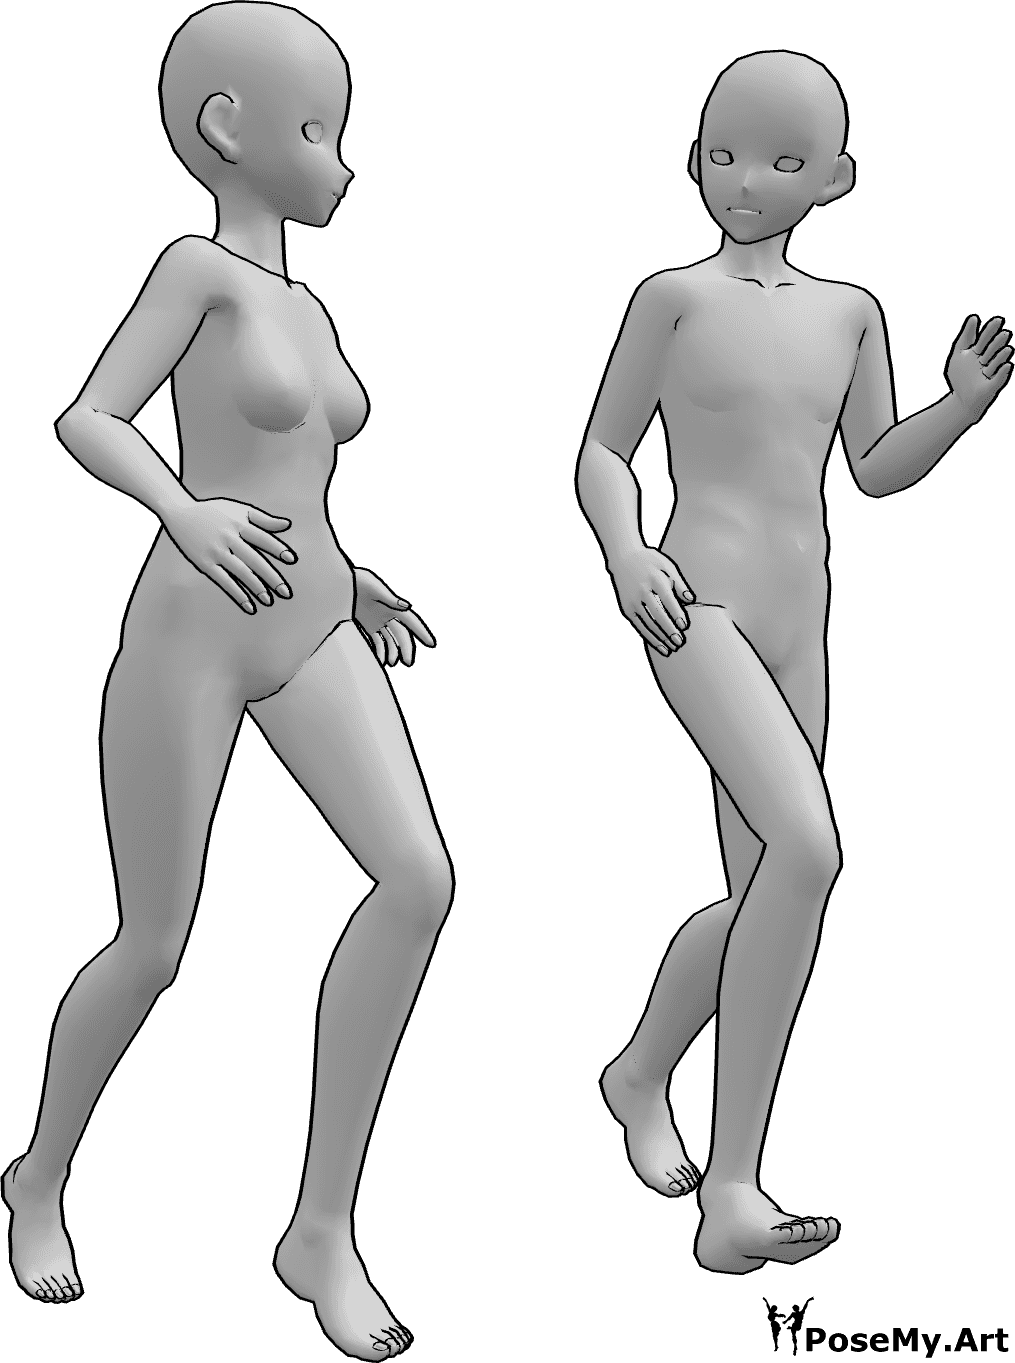 Referencia de poses- Femenino masculino corriendo pose - Anime femenino y masculino corren juntos y se miran